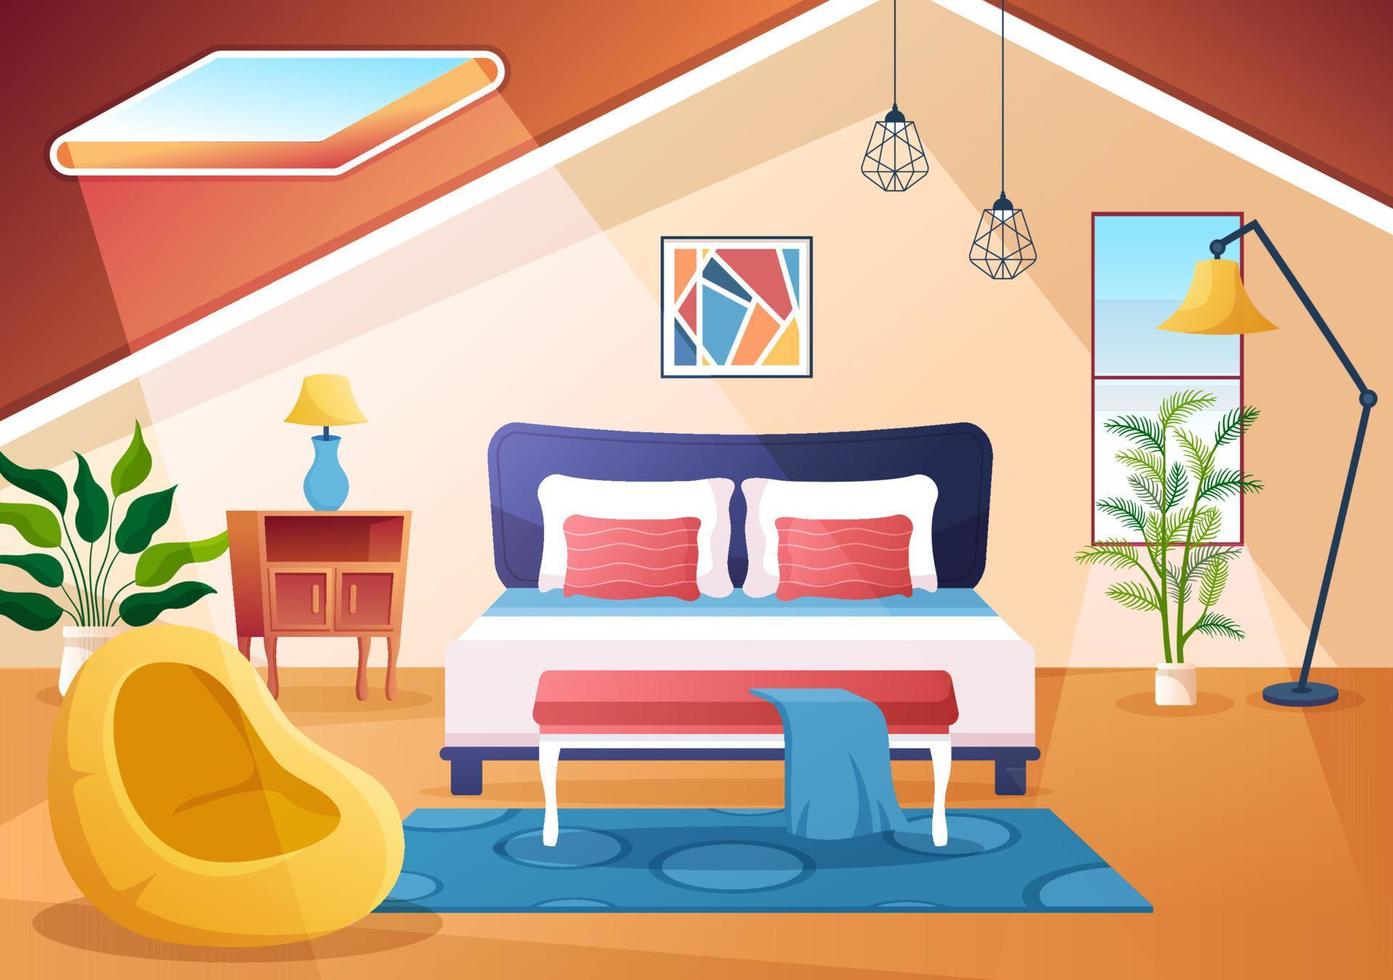 gezellige slaapkamer interieur met meubels zoals bed, kledingkast, nachtkastje, vaas, kroonluchter in moderne stijl in cartoon vectorillustratie vector